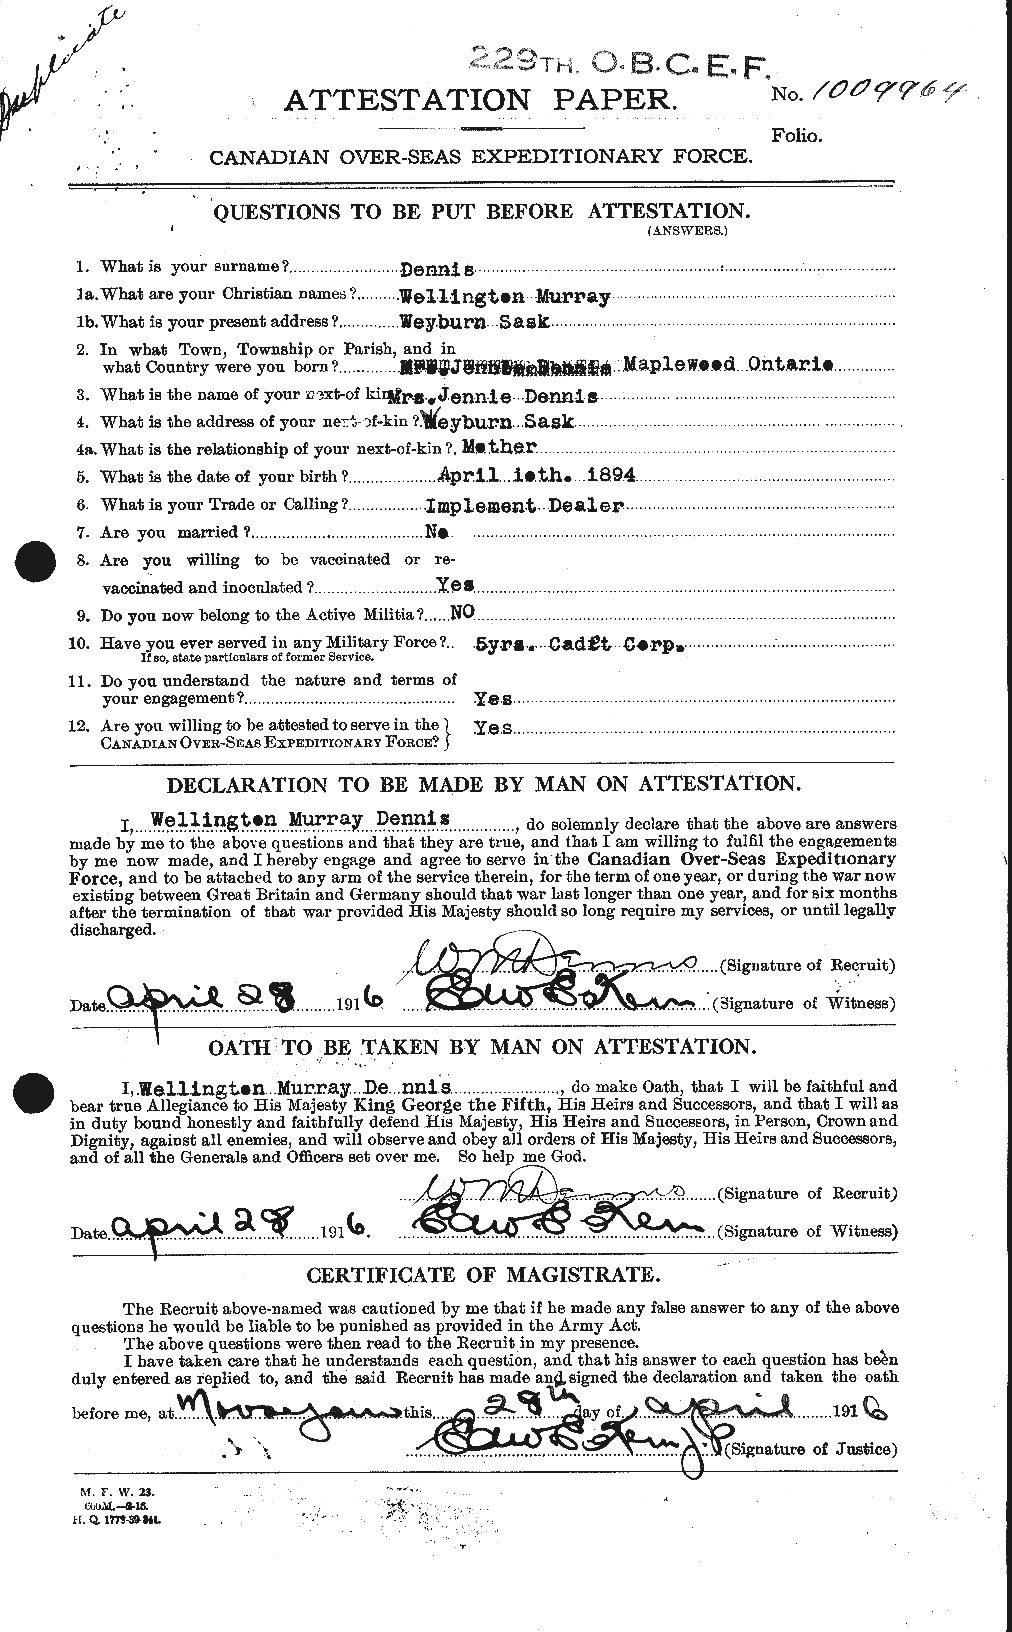 Dossiers du Personnel de la Première Guerre mondiale - CEC 286263a